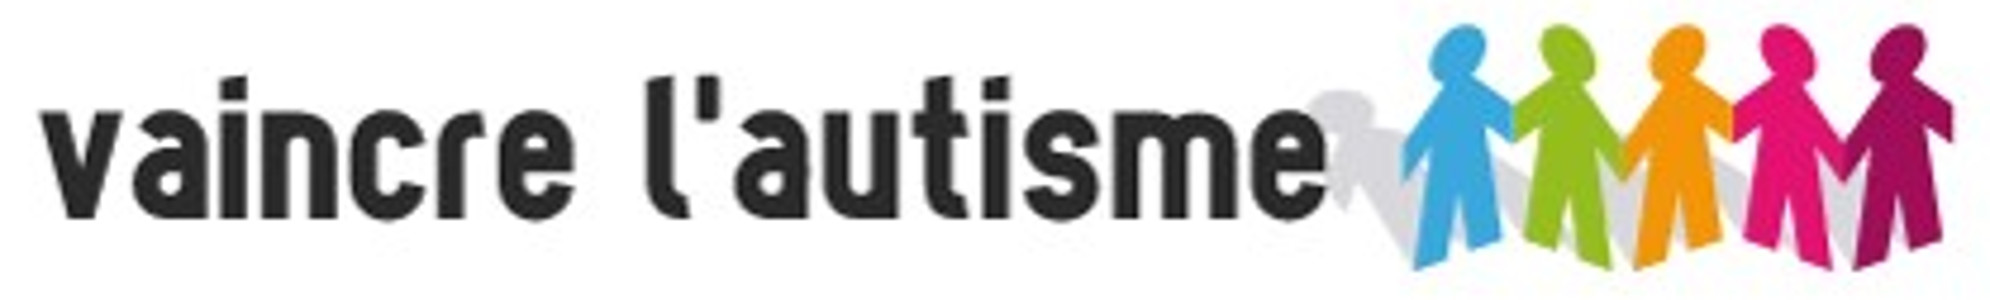 Vaincre l'autisme